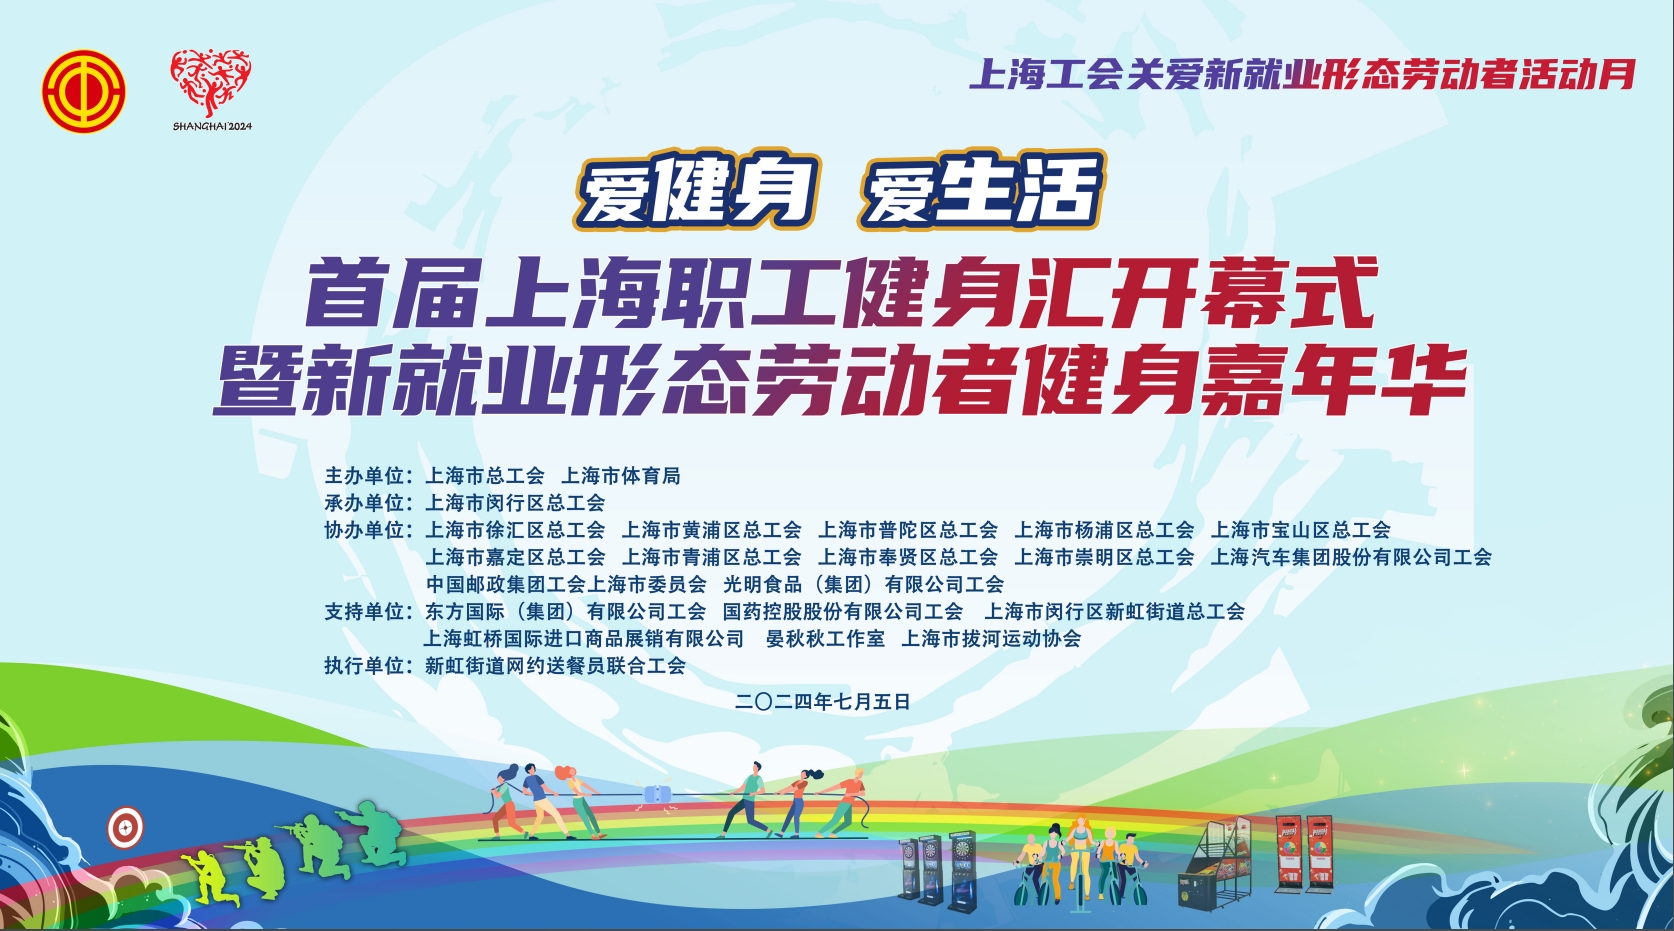 首届上海职工健身汇开幕式暨新就业形态劳动者健身嘉年华活动